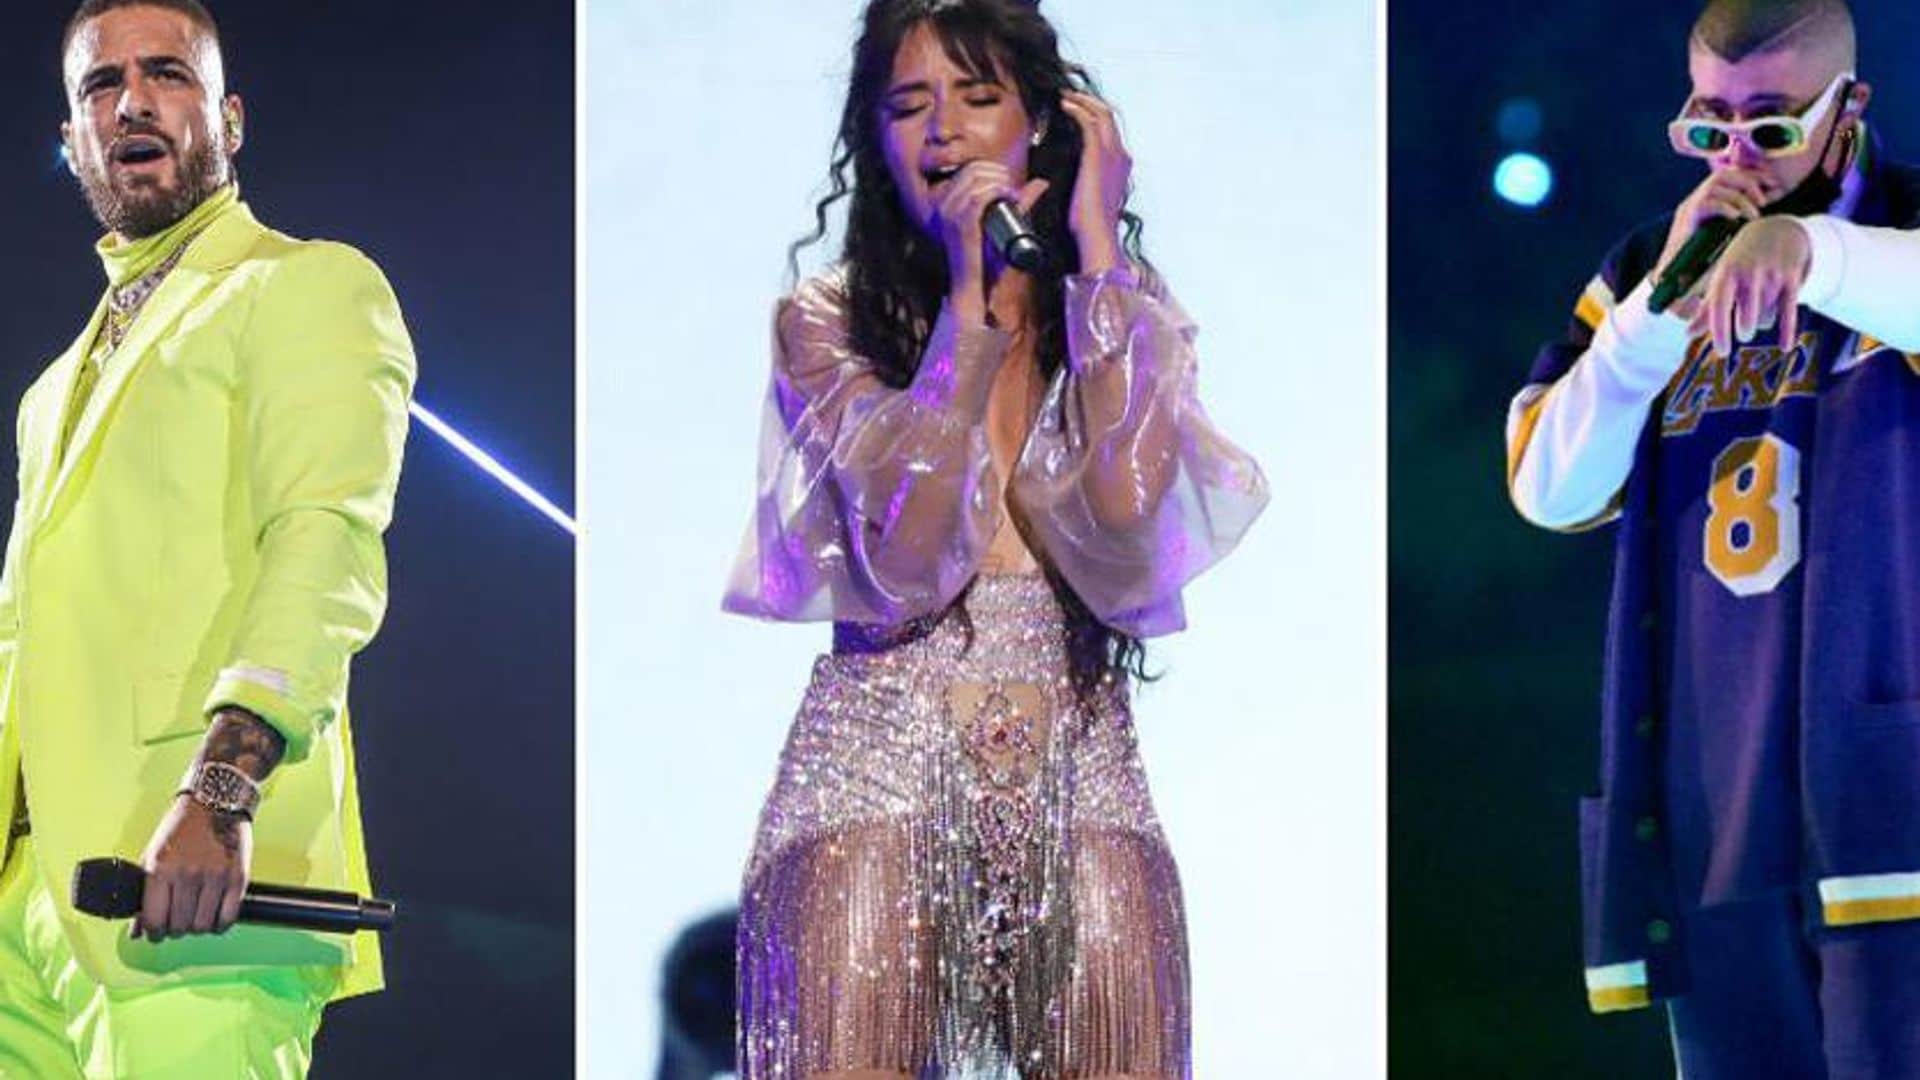 Maluma, Camila Cabello and Bad Bunny bring Latin power to the 2020 Grammys